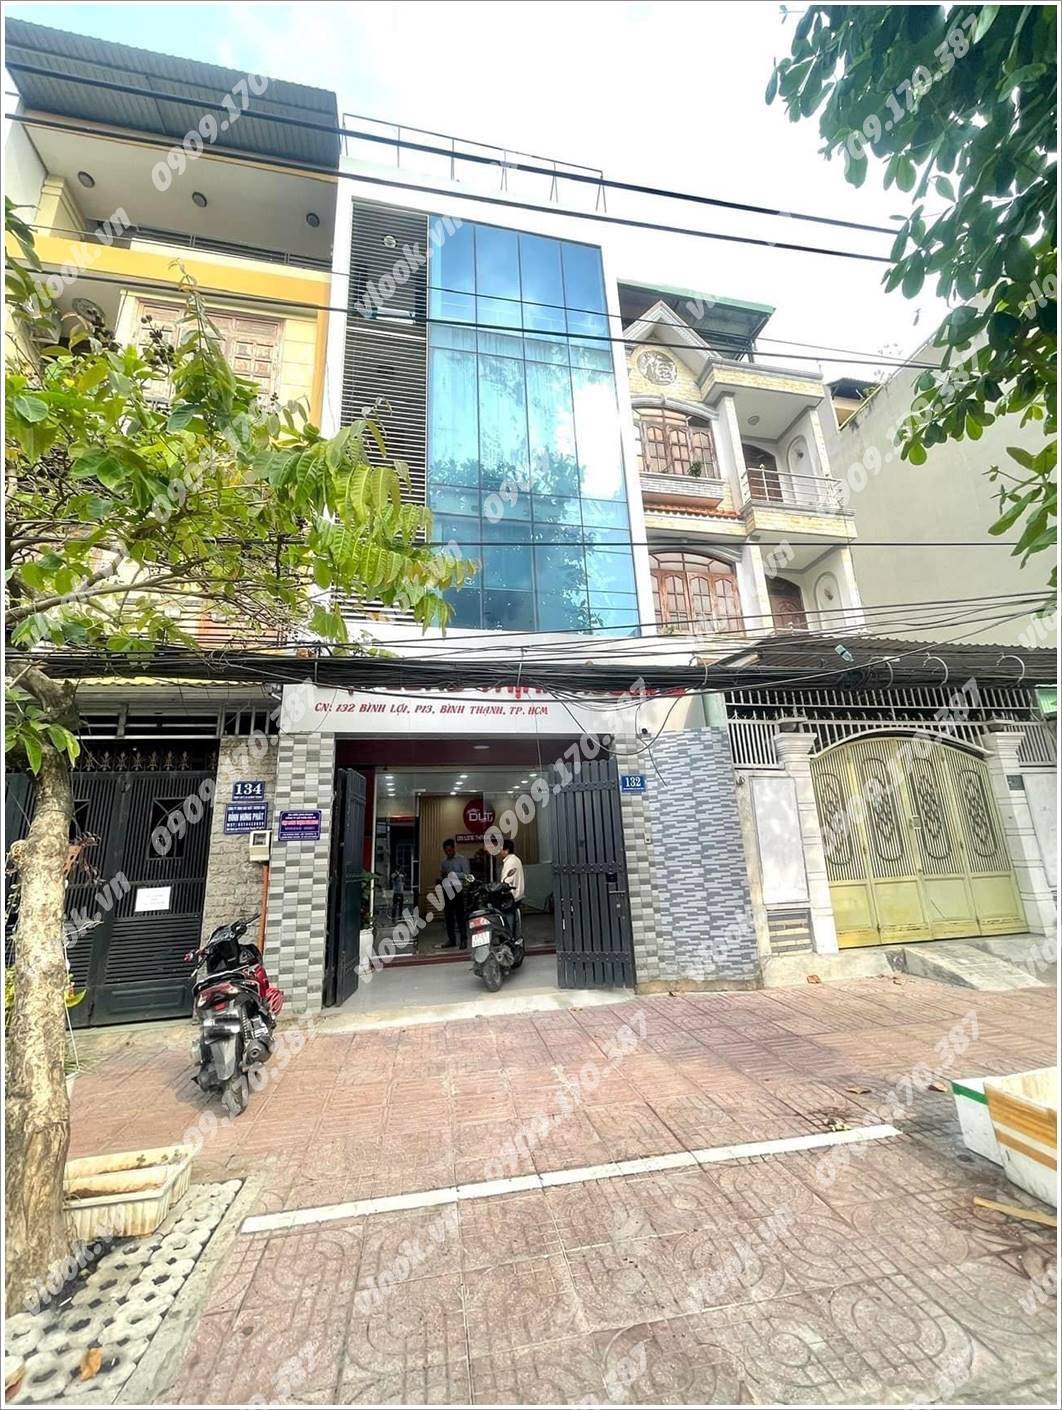 Cao ốc văn phòng cho thuê tòa nhà Đại Long Thịnh Holding, Bình Lợi, Quân Bình Thạnh, TP.HCM - vlook.vn